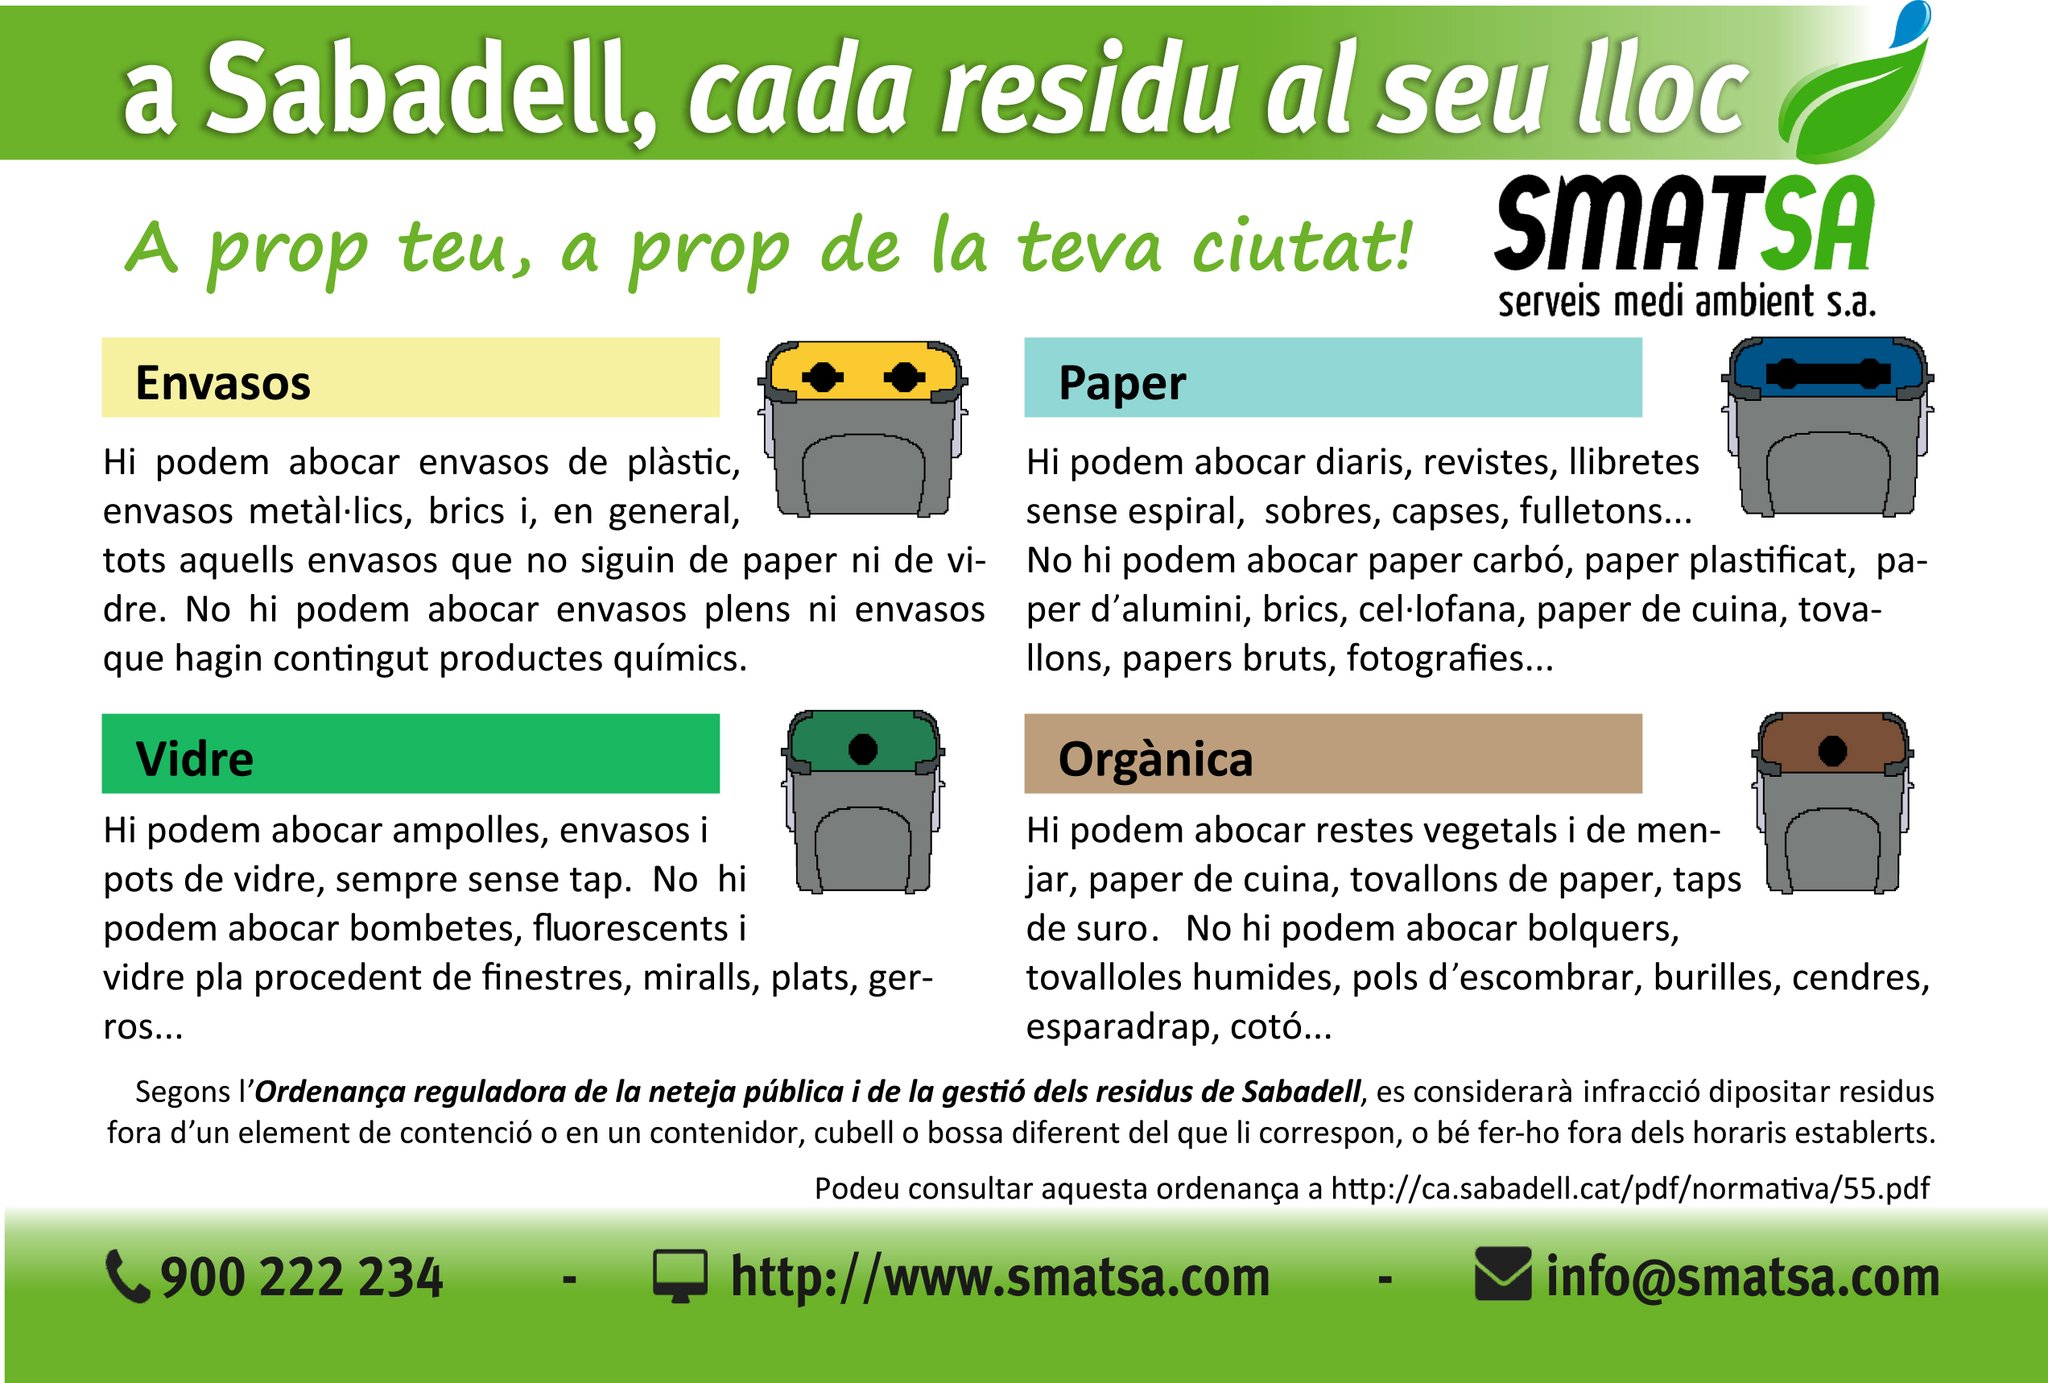 SMATSA в Twitter: „⚠️Cada residu té el seu color ♻️Recorda que fer la  recollida selectiva dels residus es cuidar del medi ambient. #Sabadell  https://t.co/zE5ZxCqDnf“ / Twitter